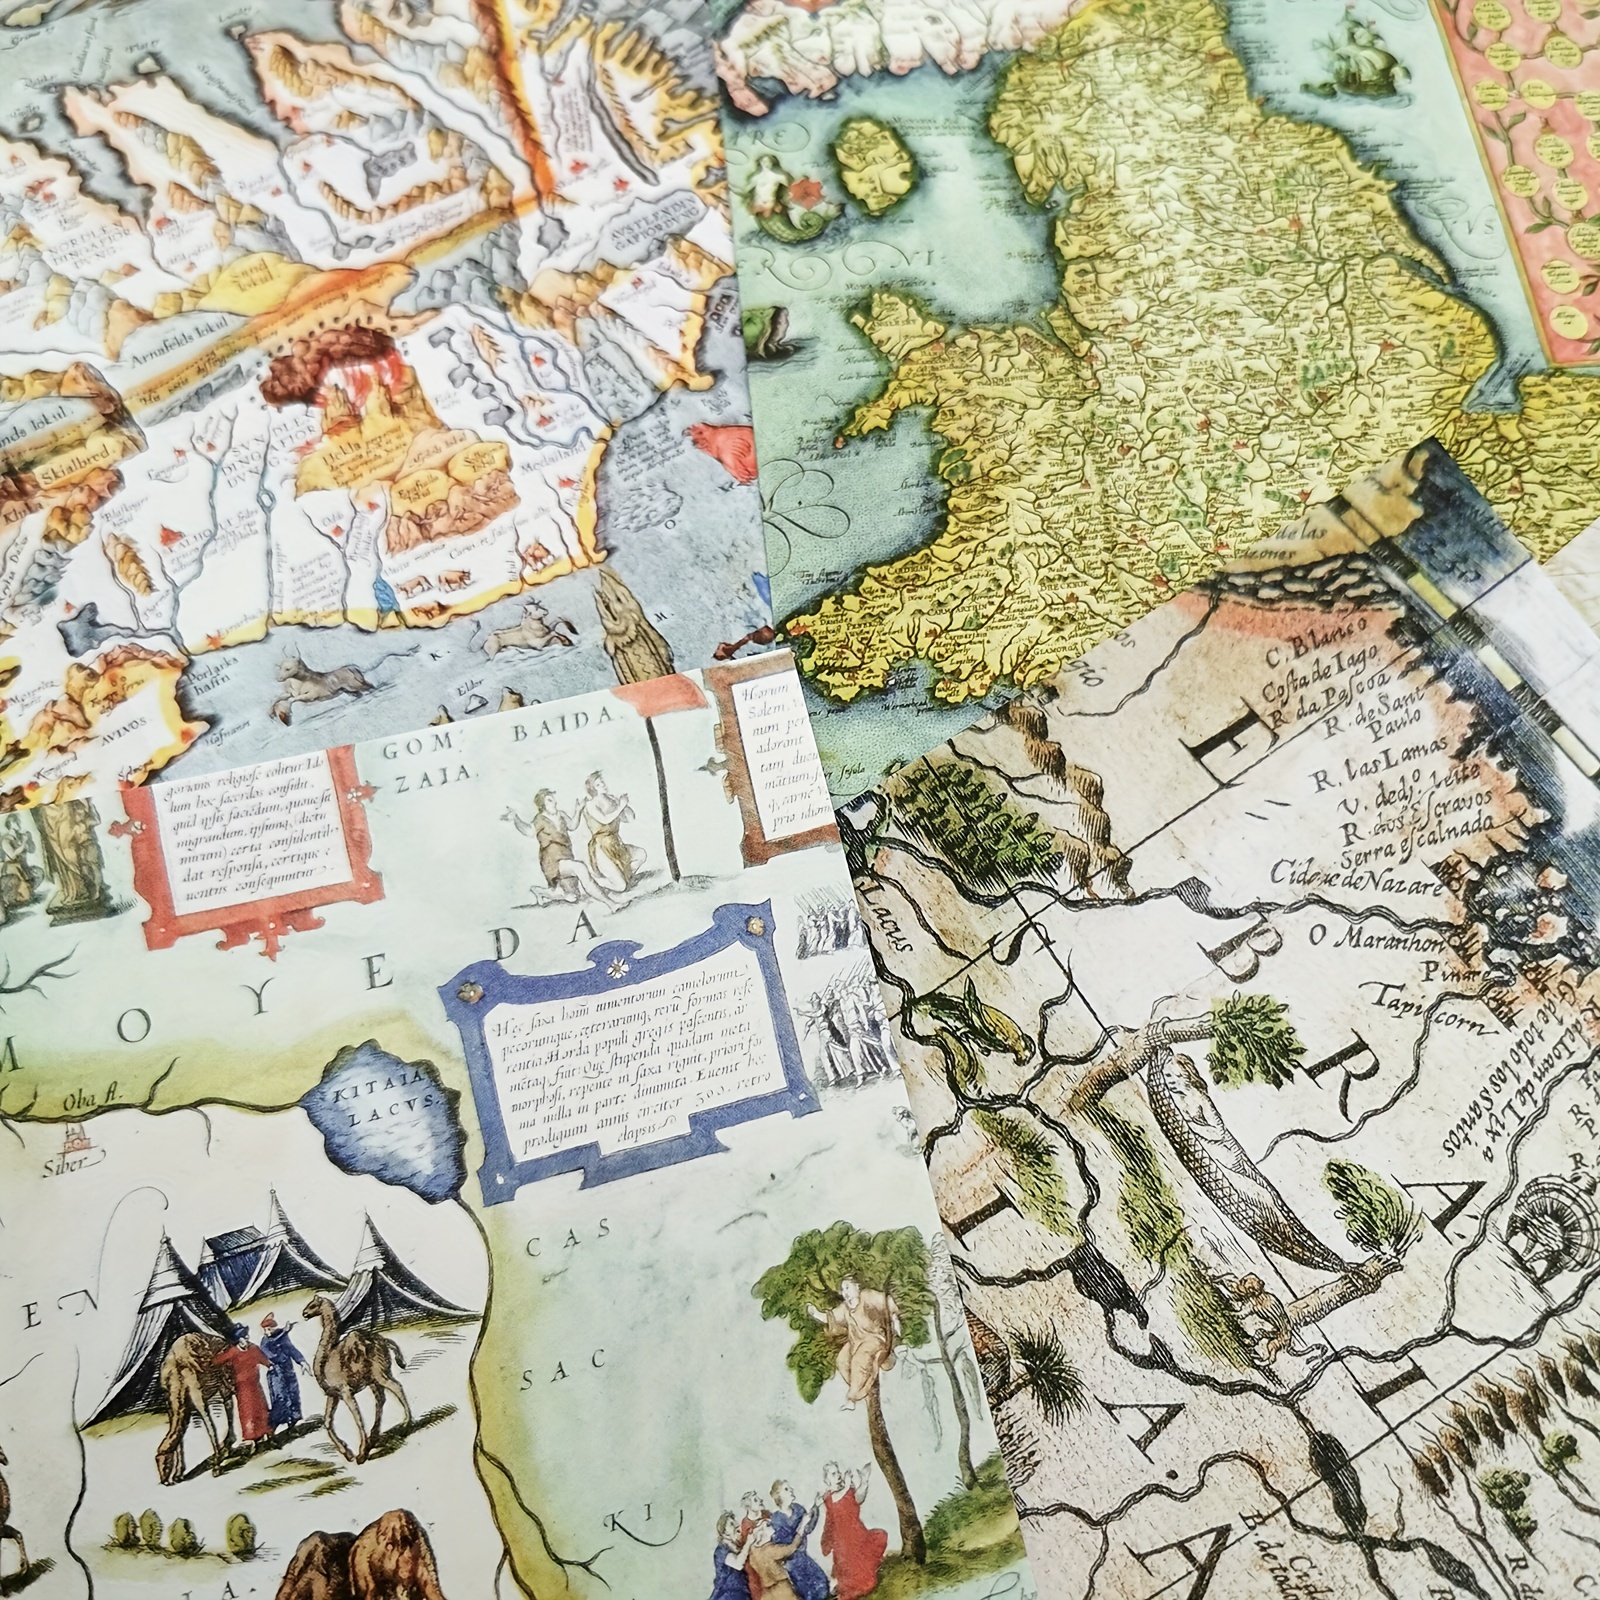 Mapa mundial de viajes - madera clara de color 300 cm x 175 cm